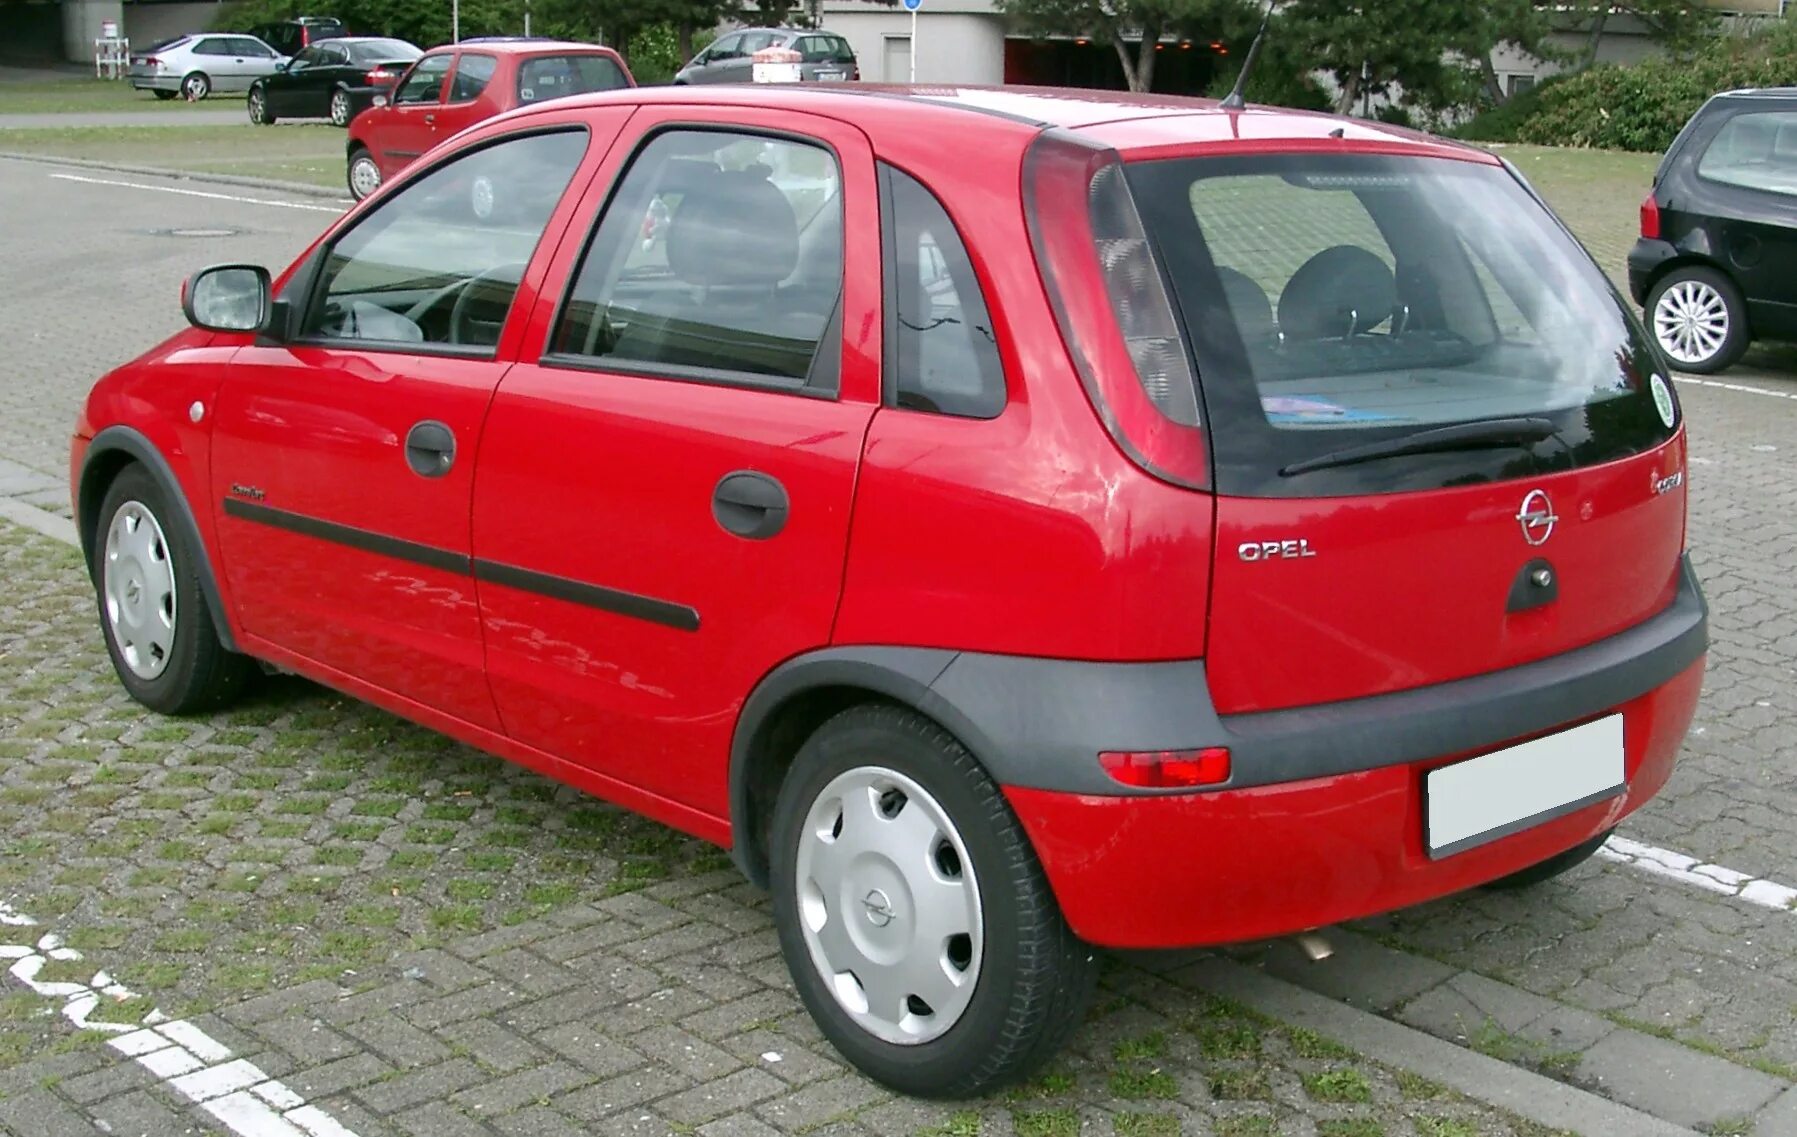 Opel Corsa 2003. Opel Corsa 2002. Opel Corsa 1990.